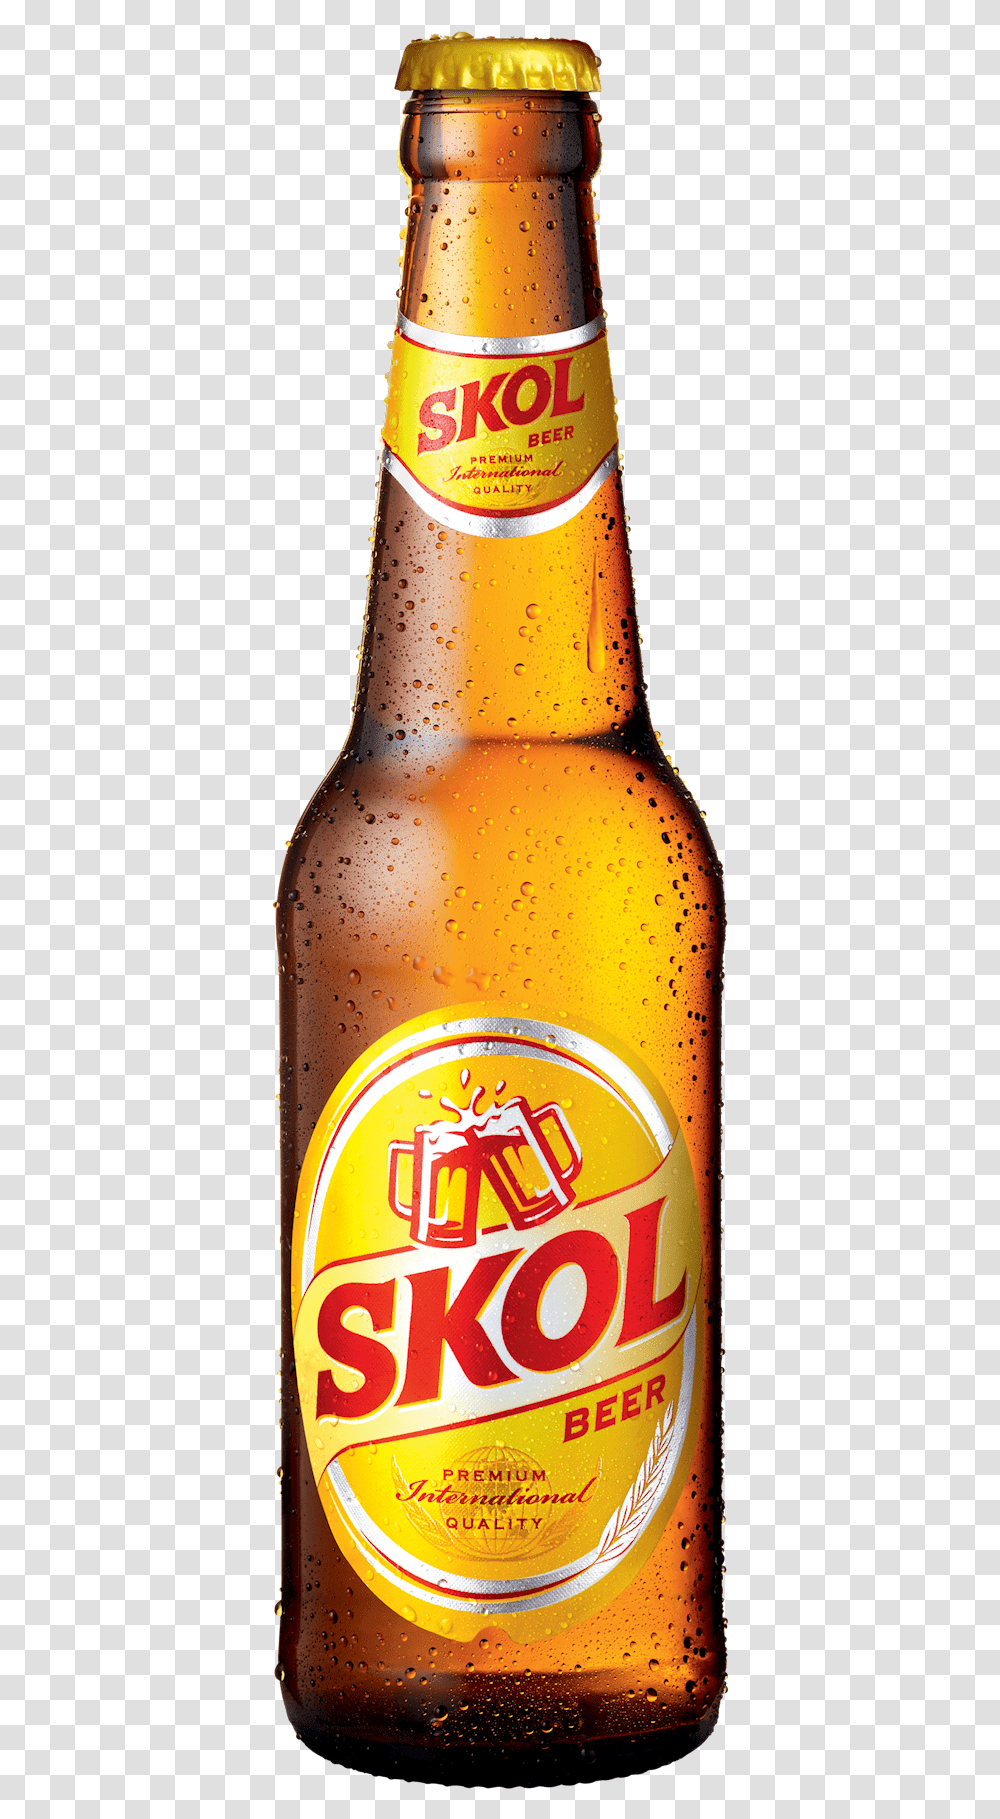 Skol Beer Bottle, Alcohol, Beverage, Drink, Lager Transparent Png